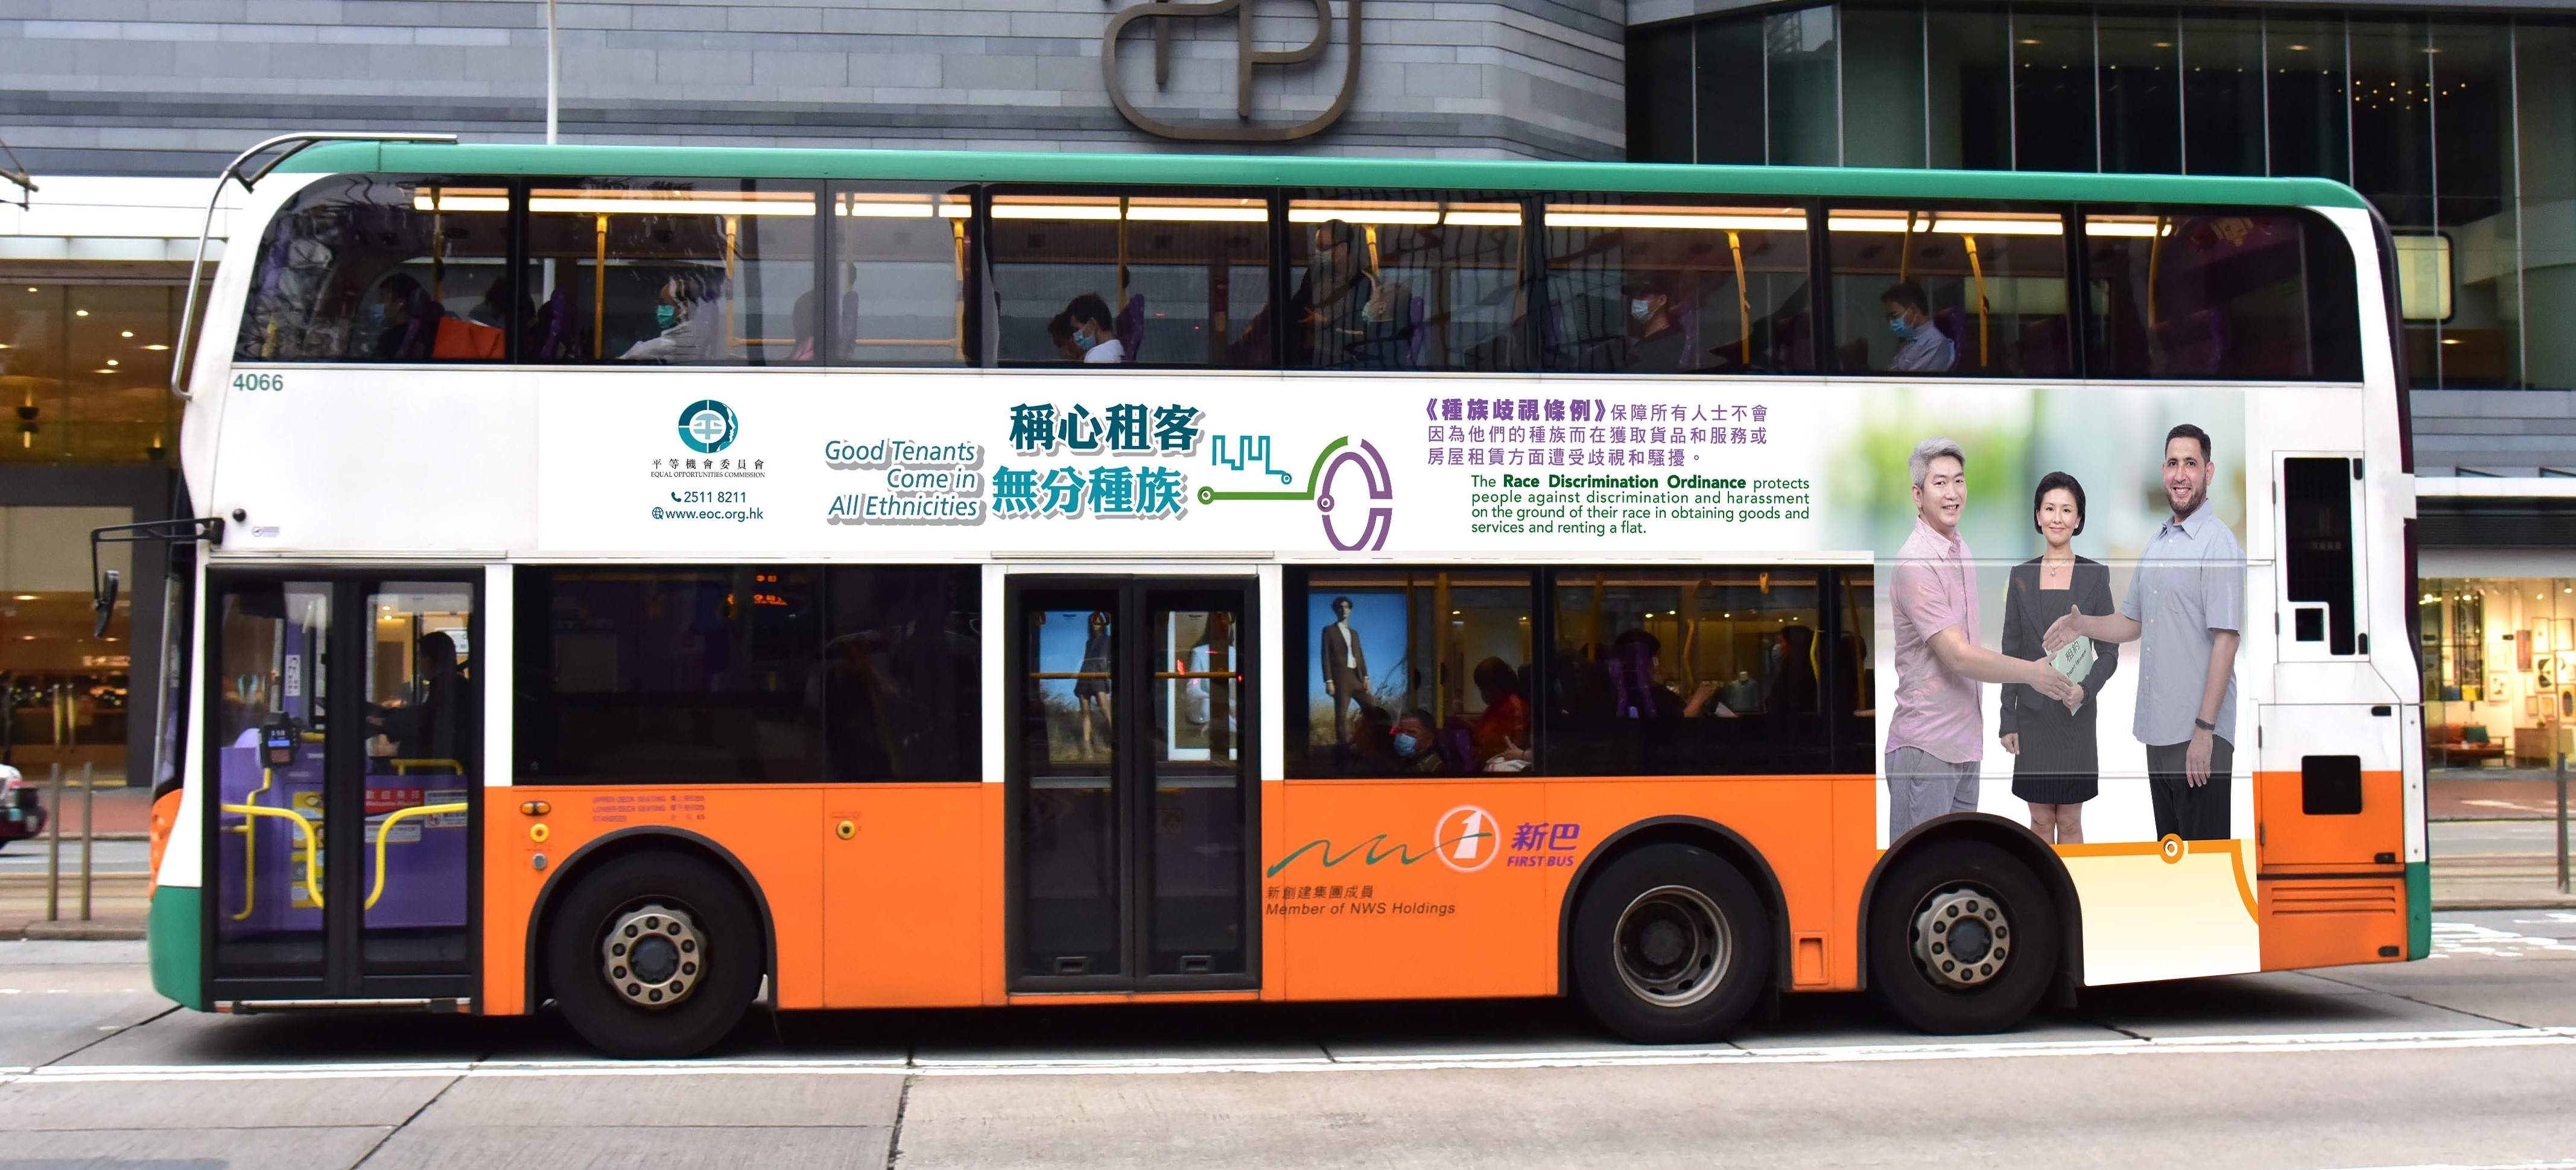 平機會推出以「稱心租客　無分種族」為題的巴士車身宣傳廣告，以推廣種族平等的物業租賃。